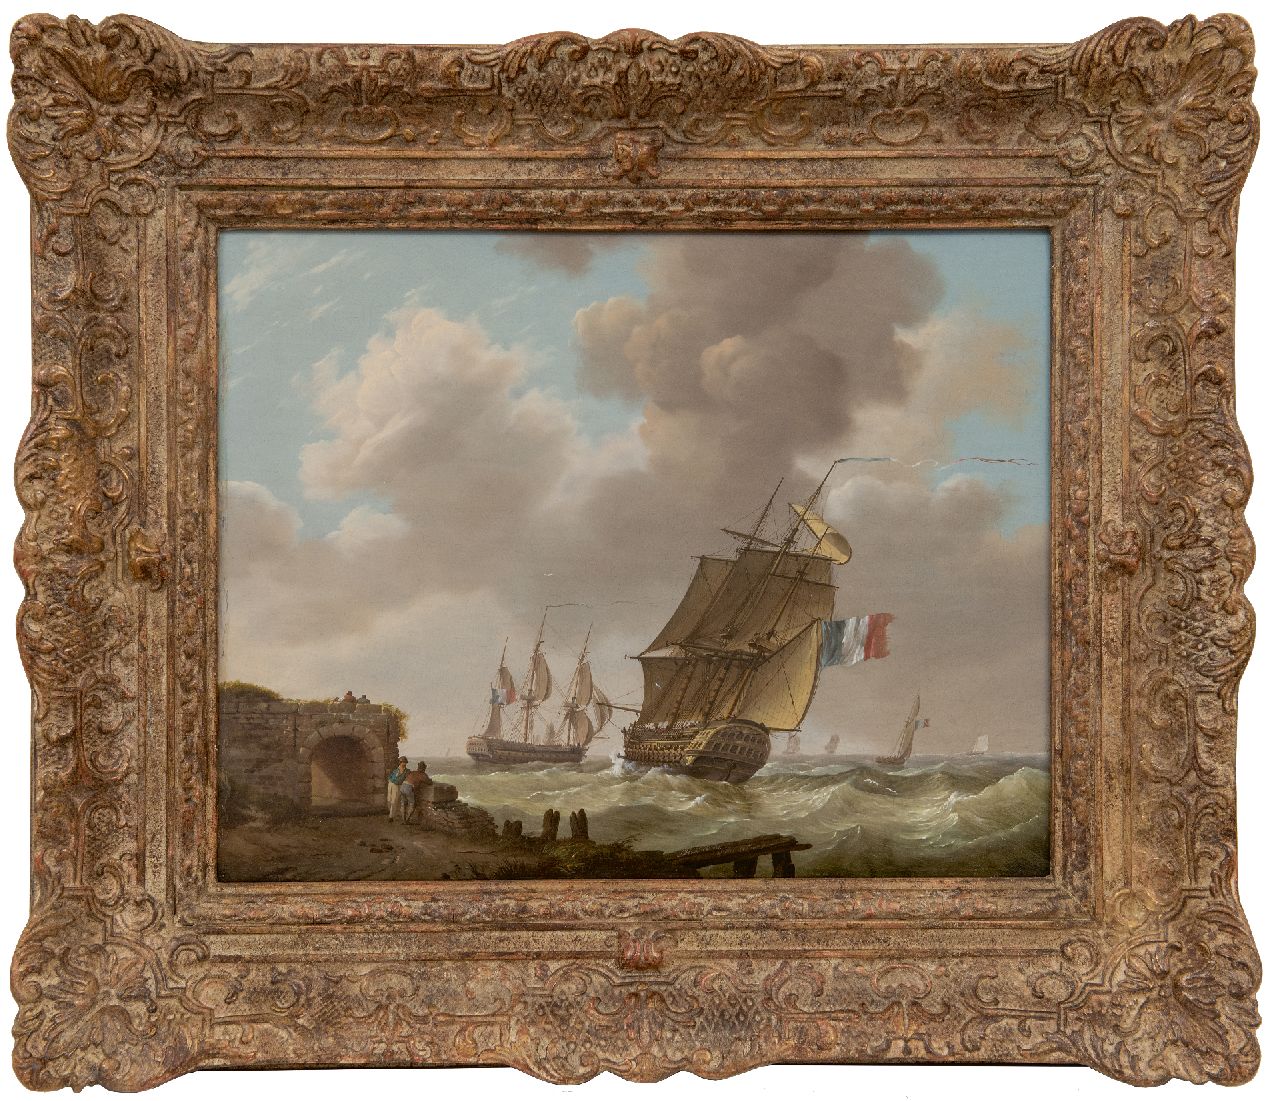 Koekkoek J.H.  | Johannes Hermanus Koekkoek | Paintings offered for sale | Warships off the Zeeland coast, oil on panel 32.1 x 40.7 cm, signed l.c.